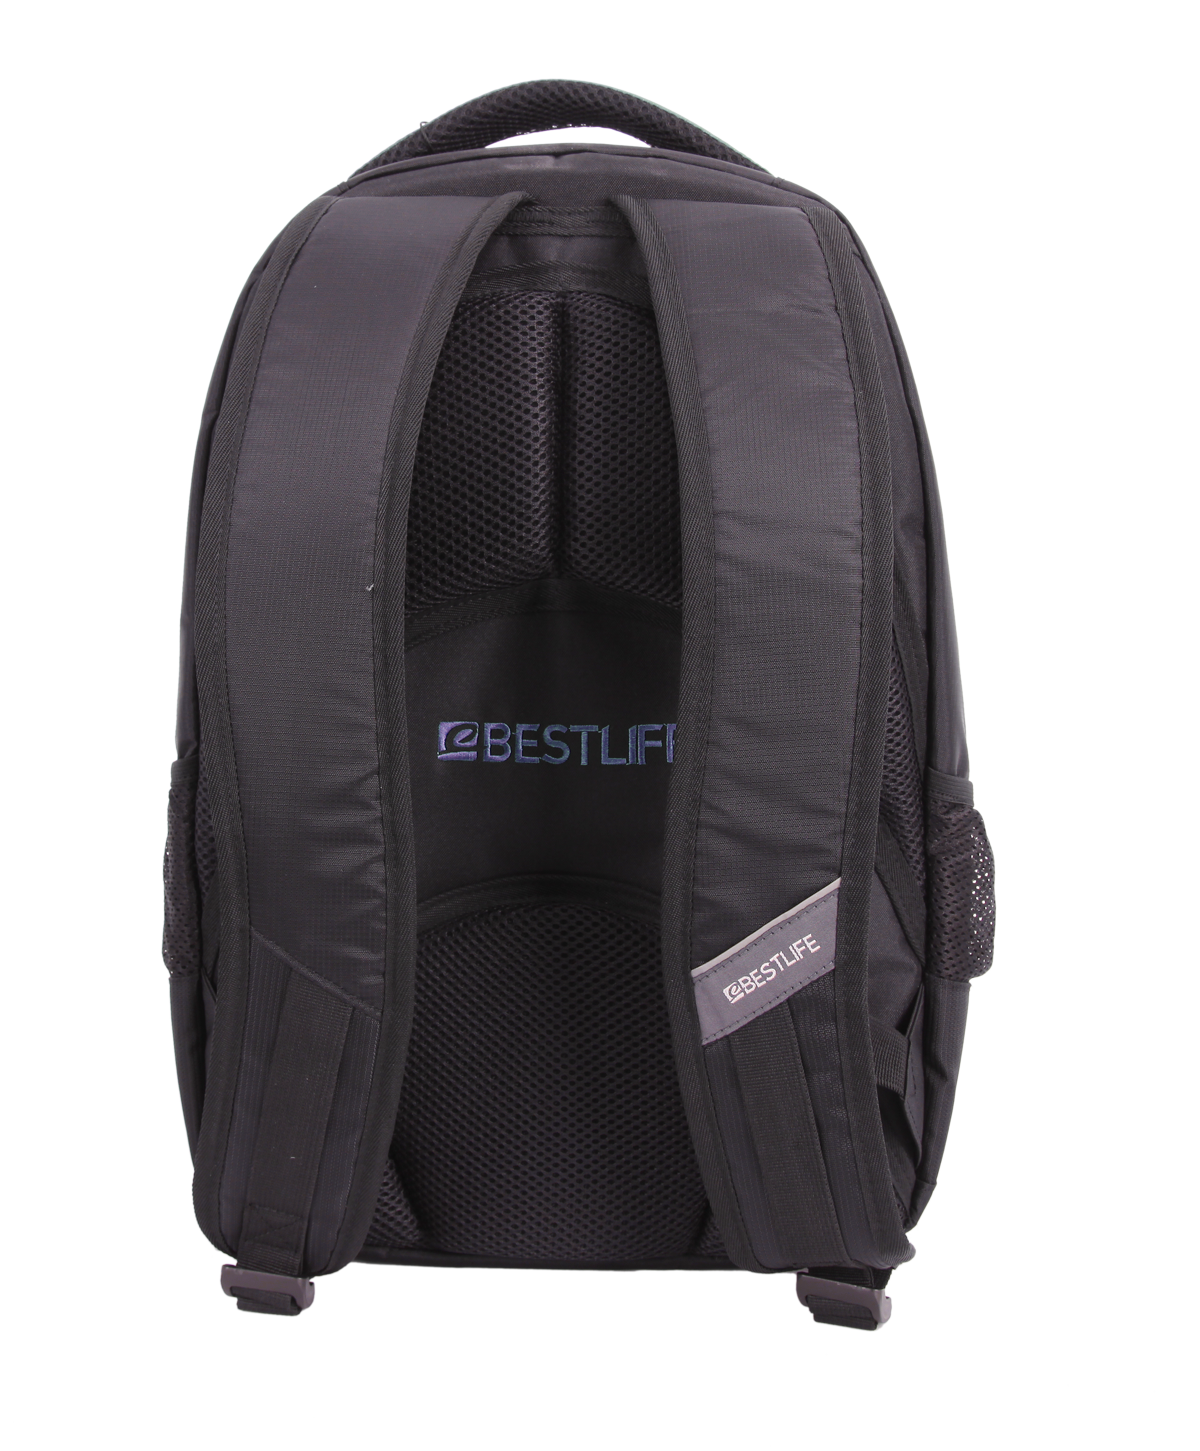 Bestlife Backpack BLB-3082B15.6'' (Blue) - OBM Distribution, Inc.